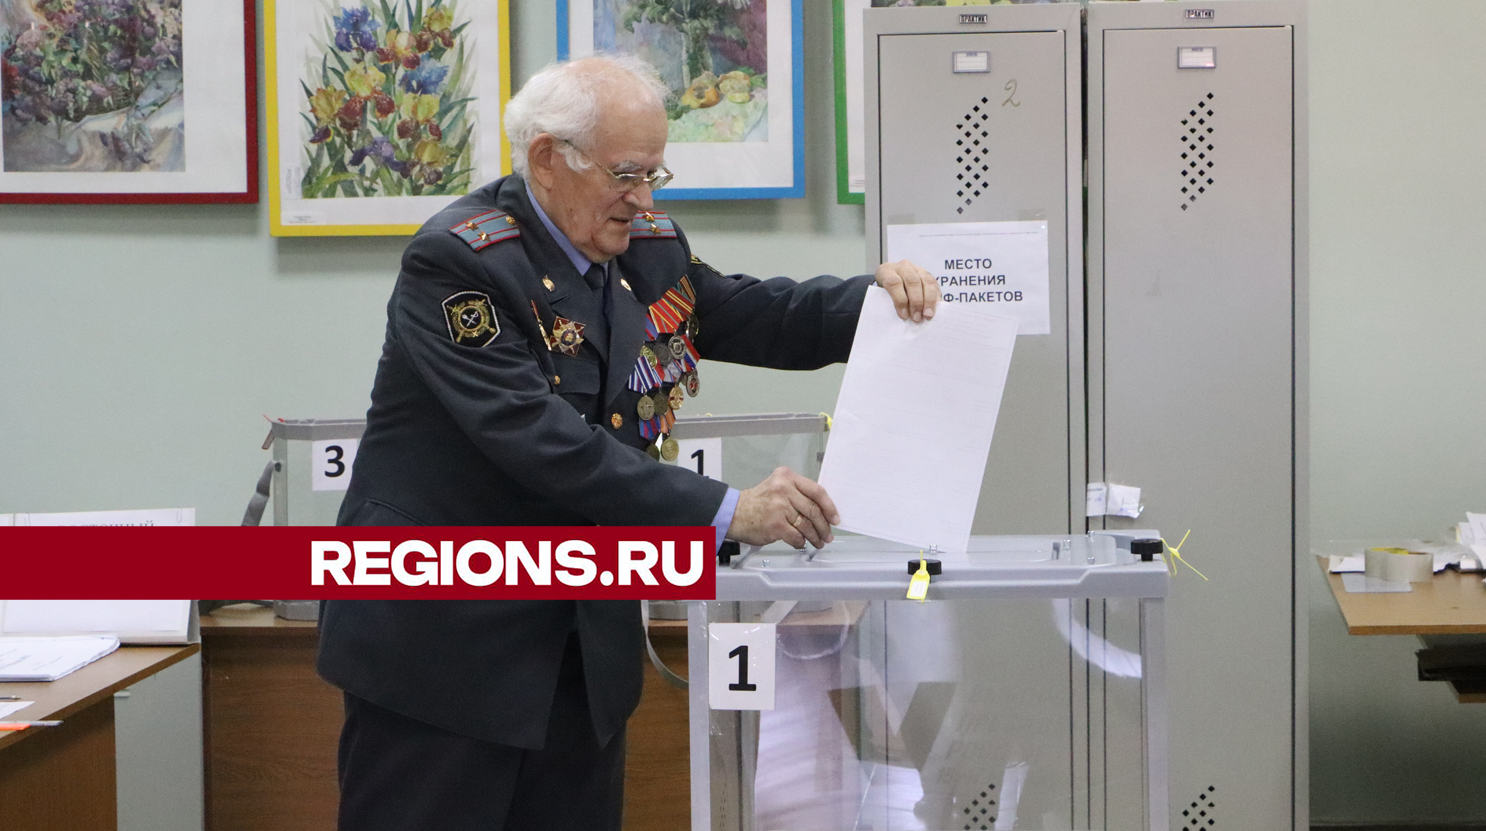 Ветеран МВД проголосовал на своем избирательном участке в Серебряных Прудах